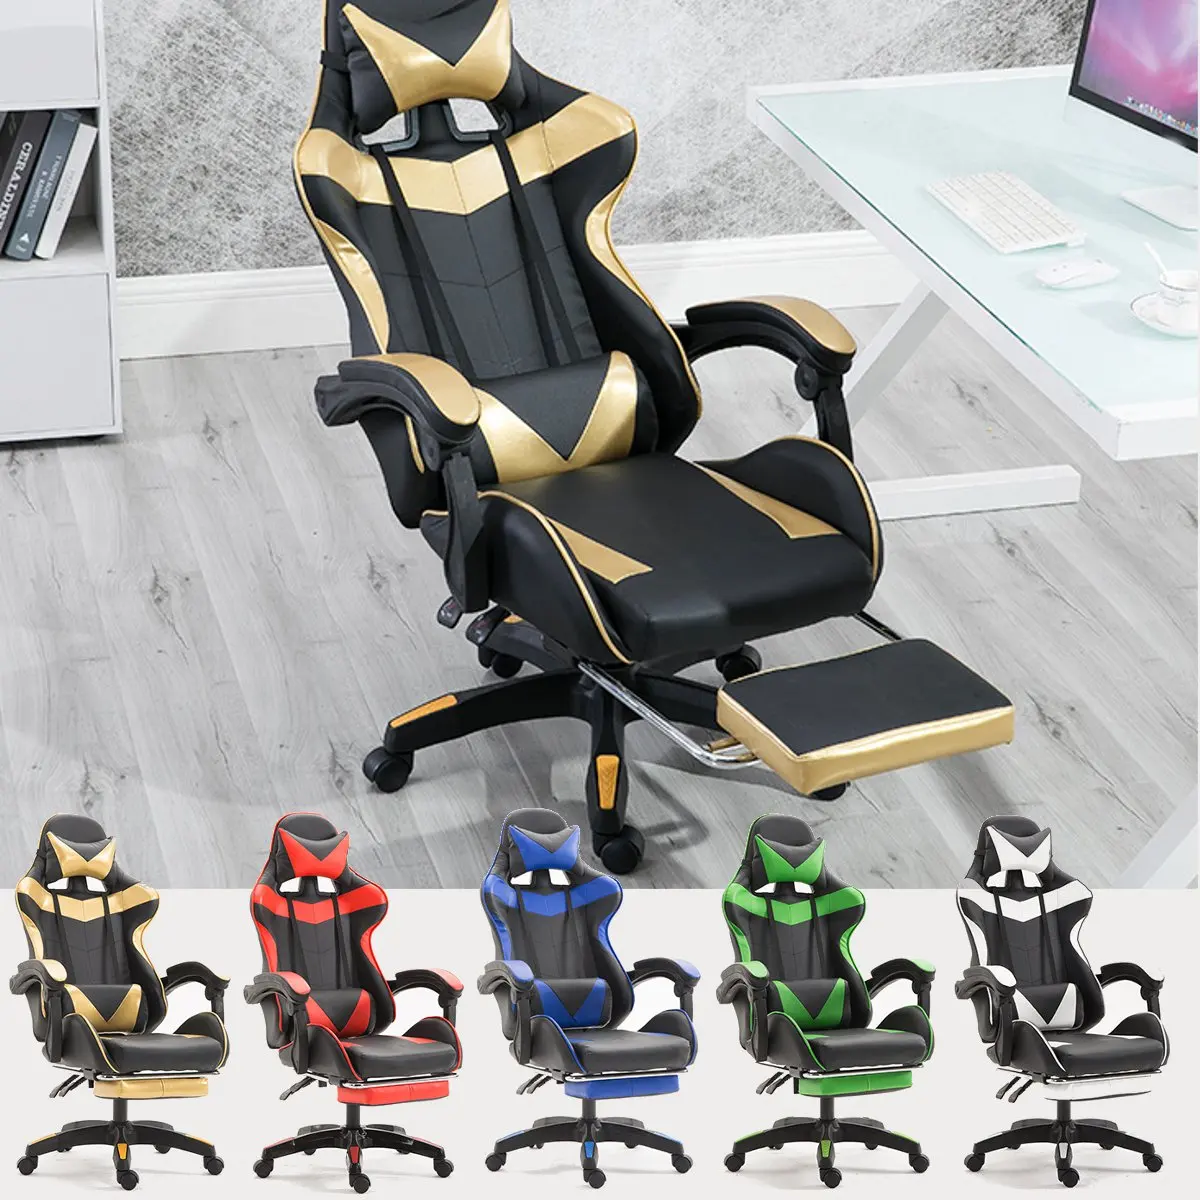 5 цветов, игровое кресло из искусственной кожи для гонок, офисное эргономичное кресло с высокой спинкой и подставкой для ног, профессиональное компьютерное кресло, мебель